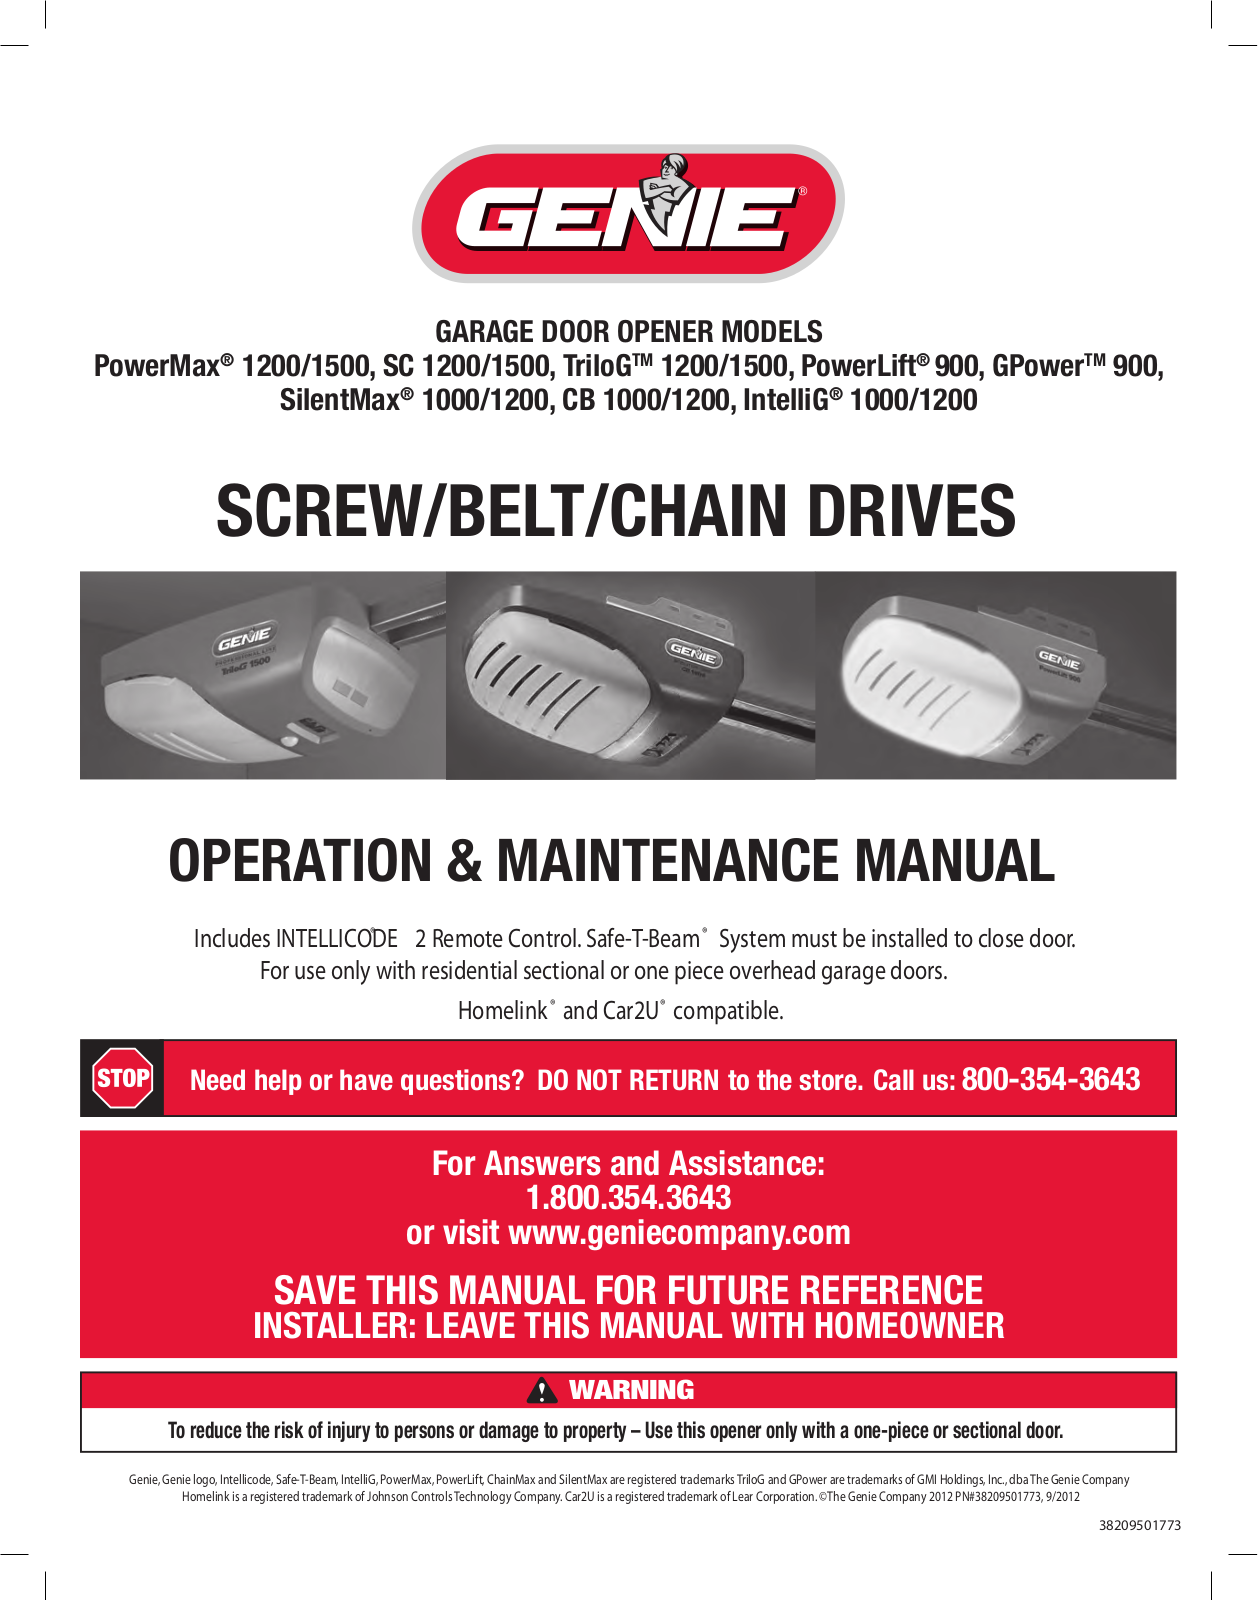 Genie GPOWER 900, 900, 1200-1500, TRILOG 1200-1500, SC 1200-1500 User Manual